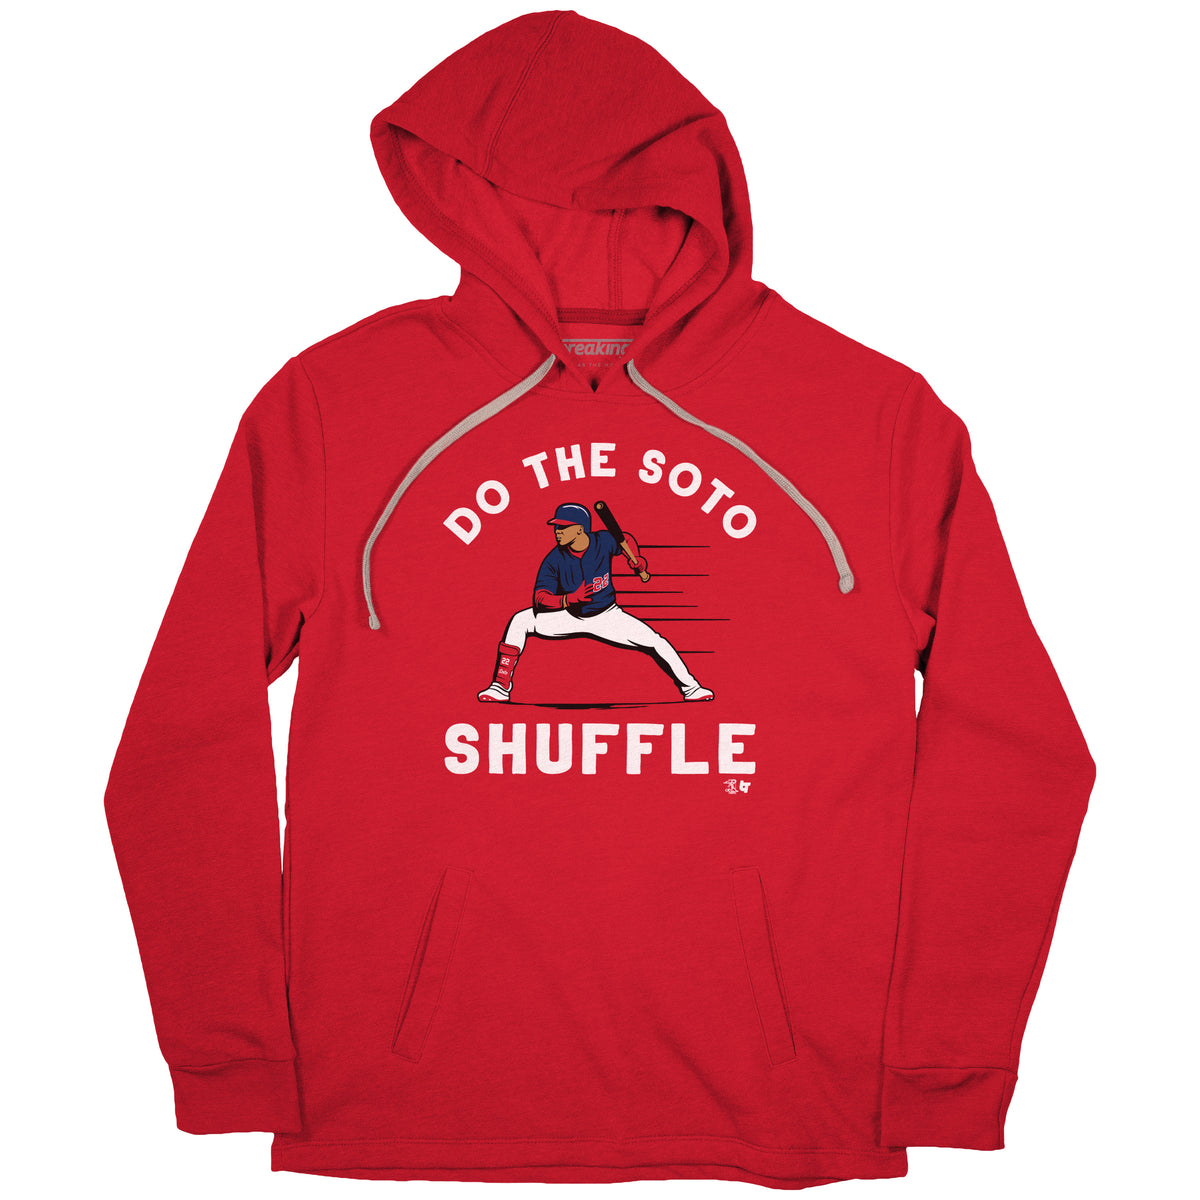 Buy Do the soto shuffle Juan Soto Washington Nationals MLB shirt